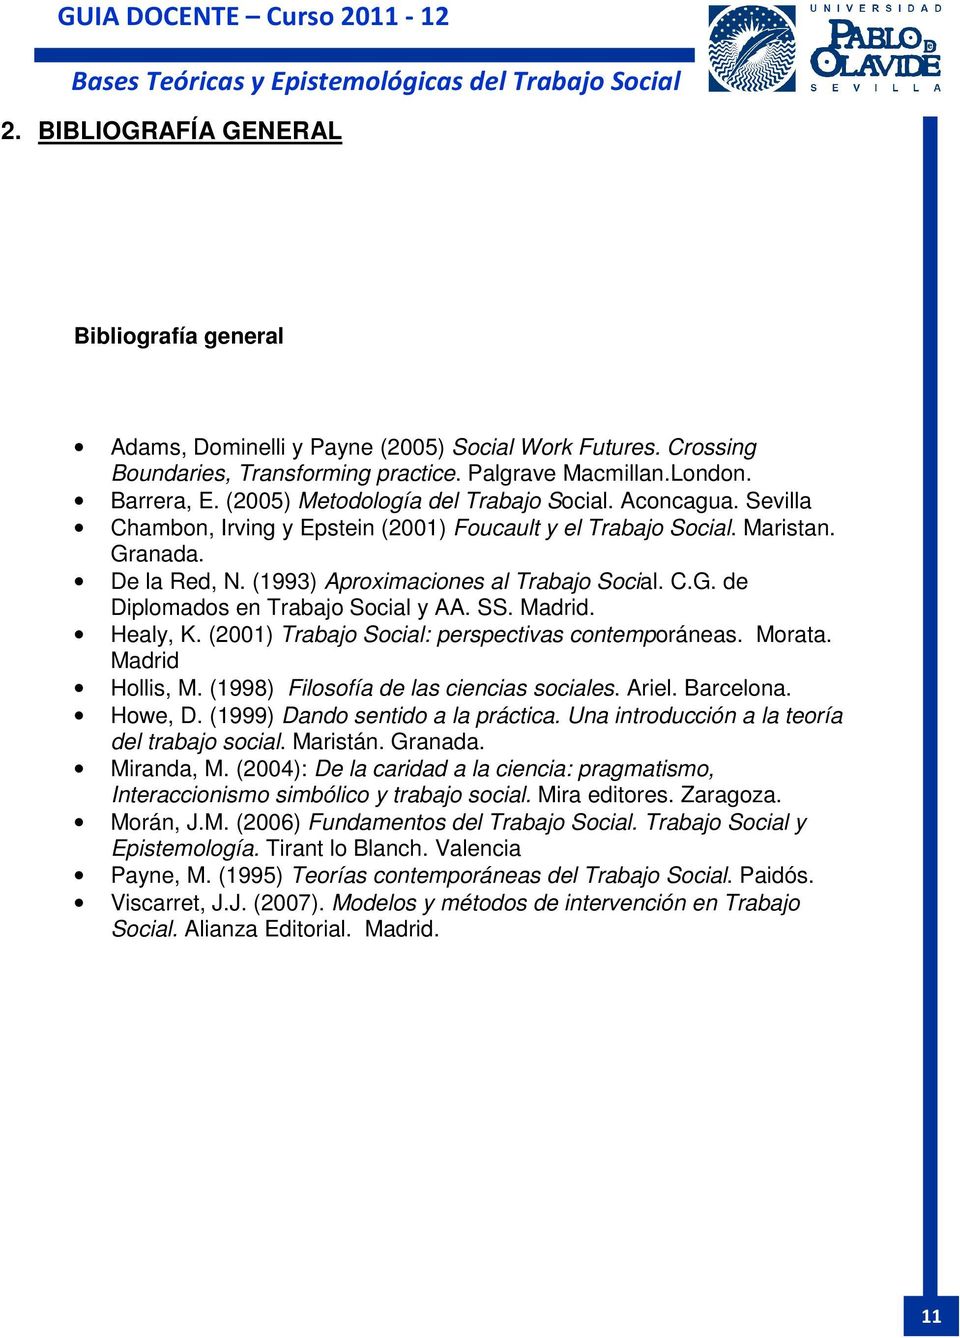 SS. Madrid. Healy, K. (2001) Trabajo Social: perspectivas contemporáneas. Morata. Madrid Hollis, M. (1998) Filosofía de las ciencias sociales. Ariel. Barcelona. Howe, D.